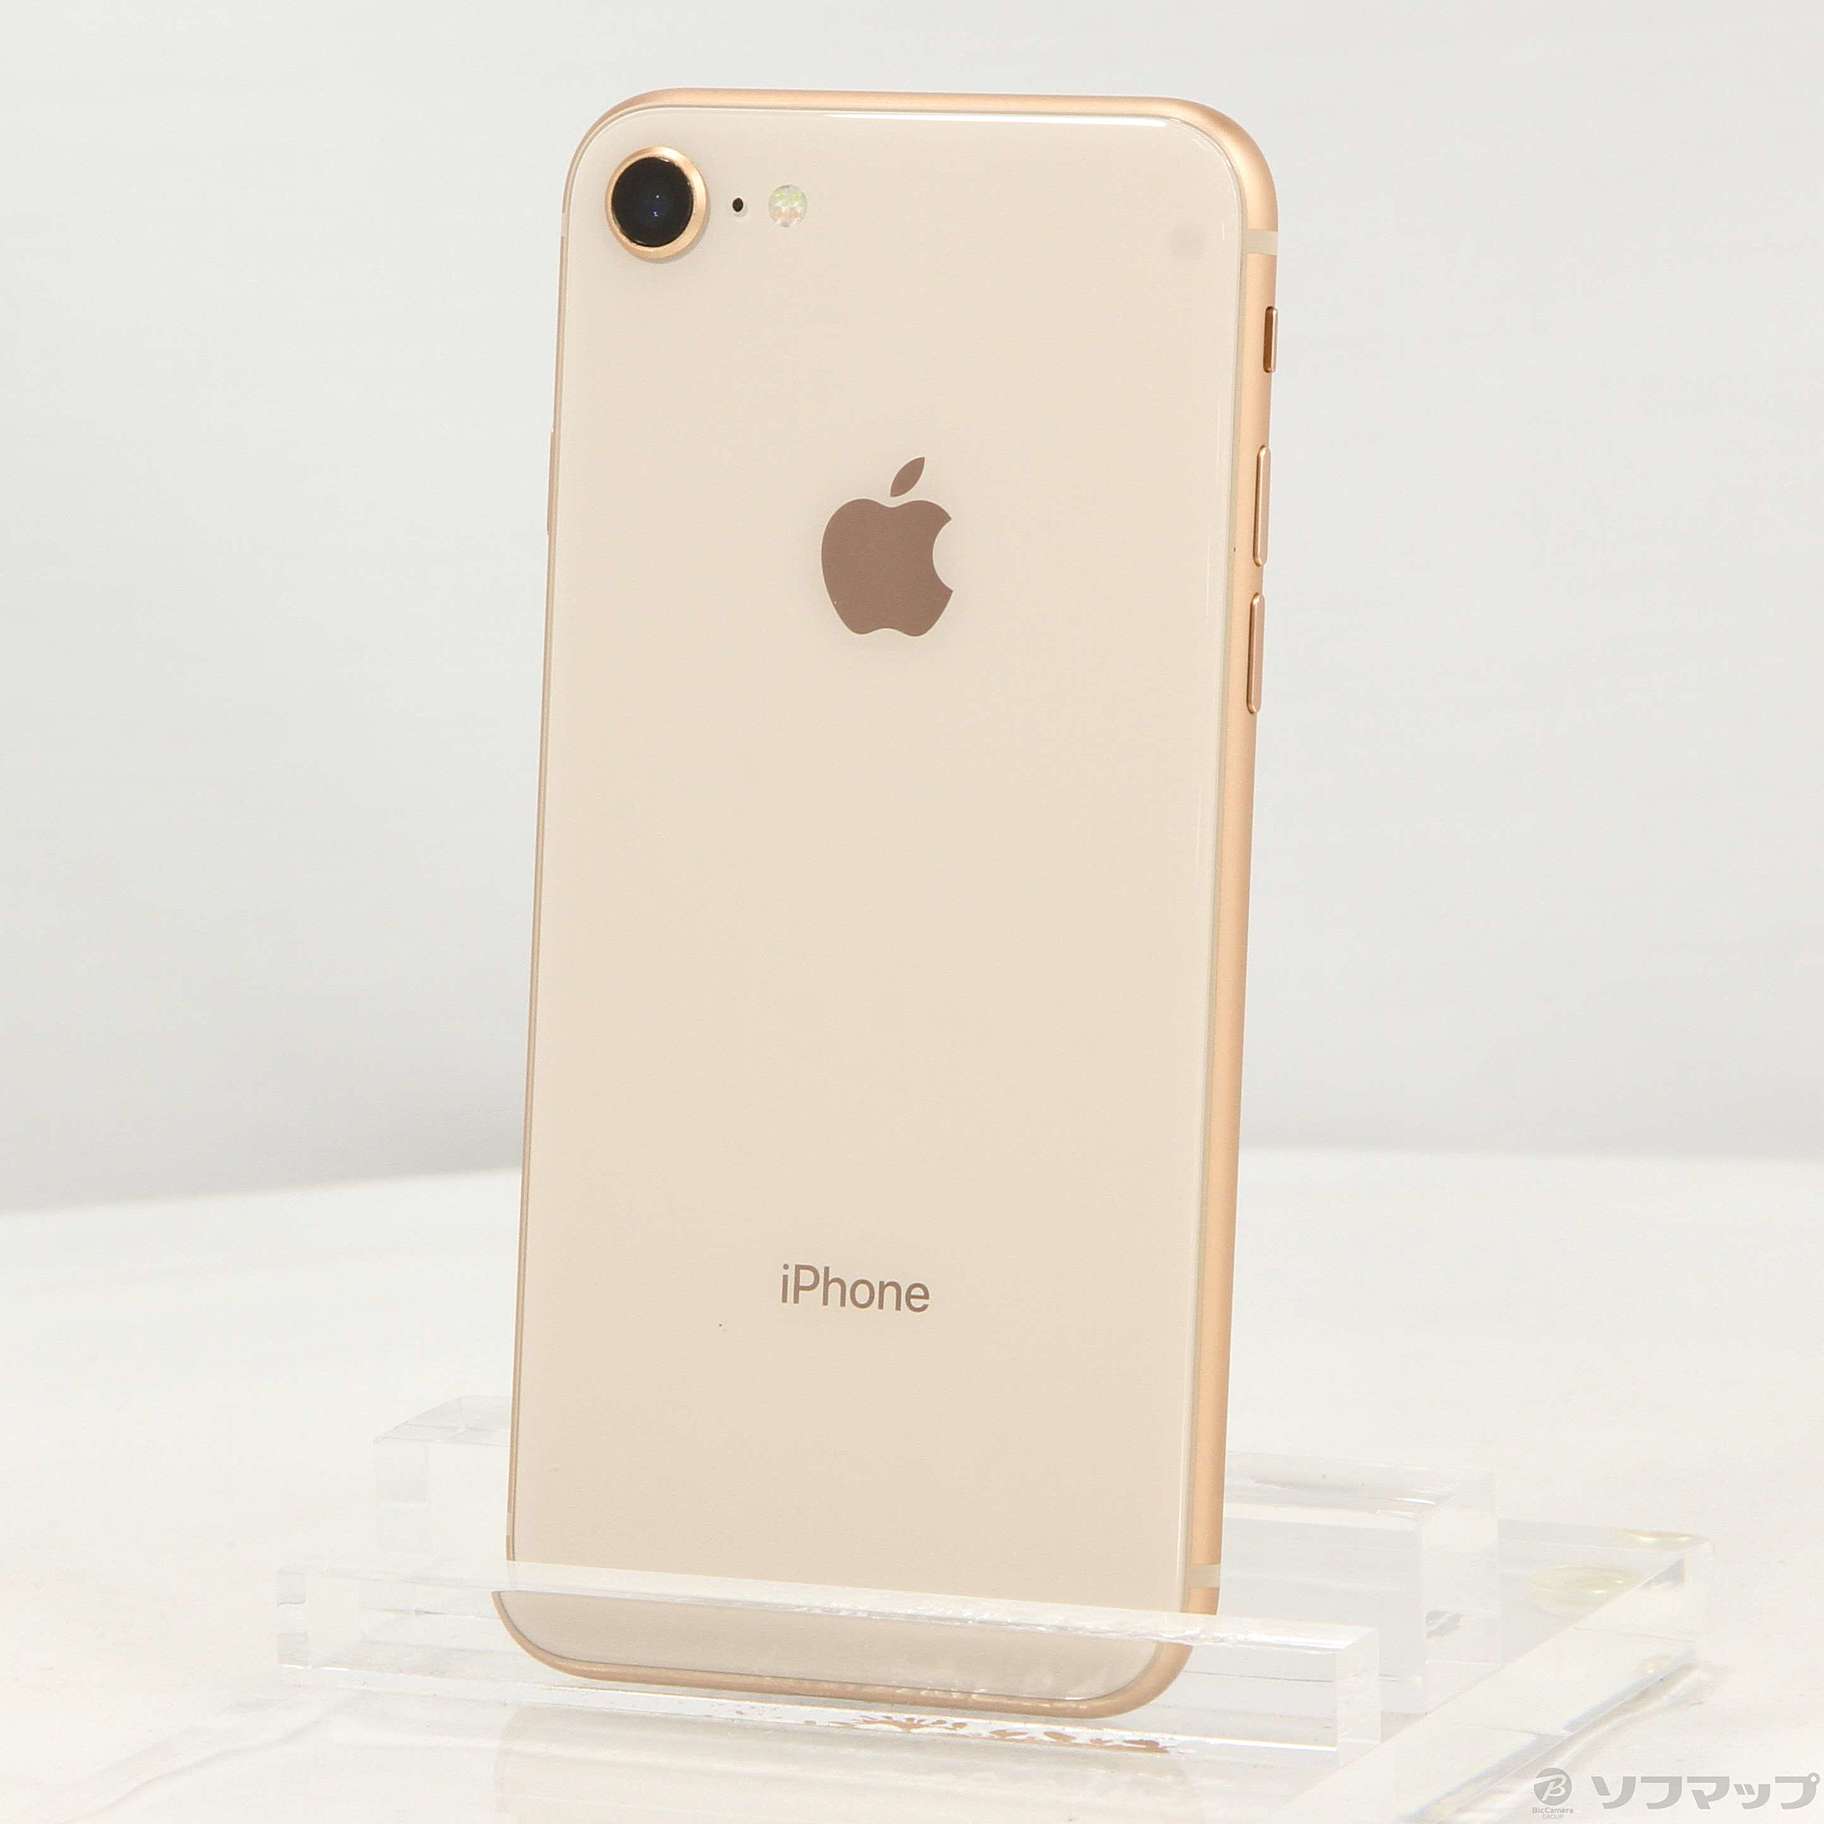 8,330円Apple iPhone 8 SIMフリー 64GB ゴールド VL